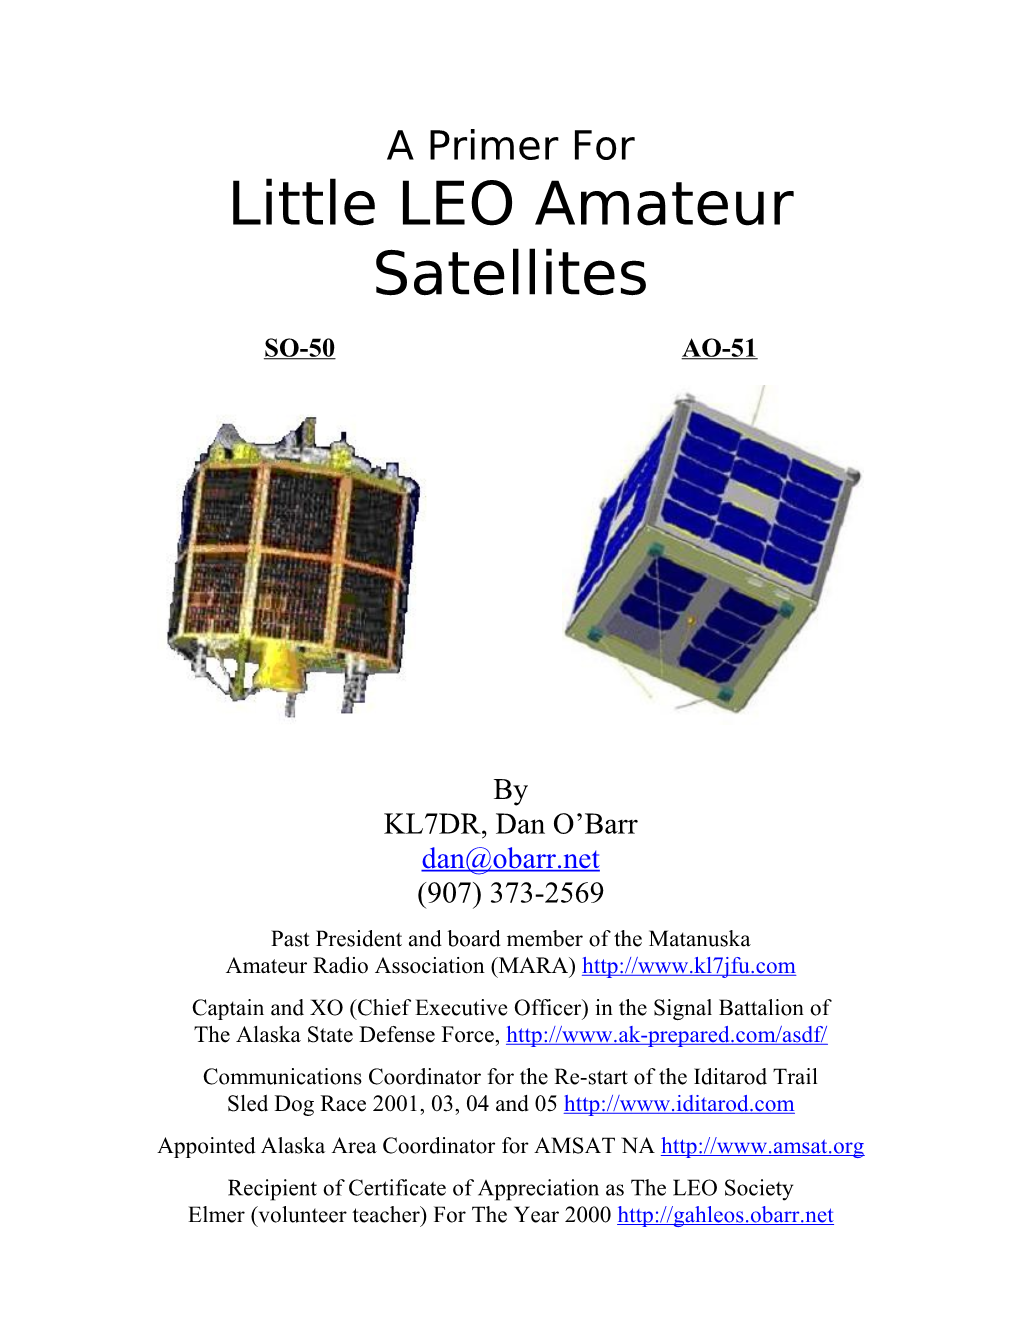 Little LEO Amateur Satellites